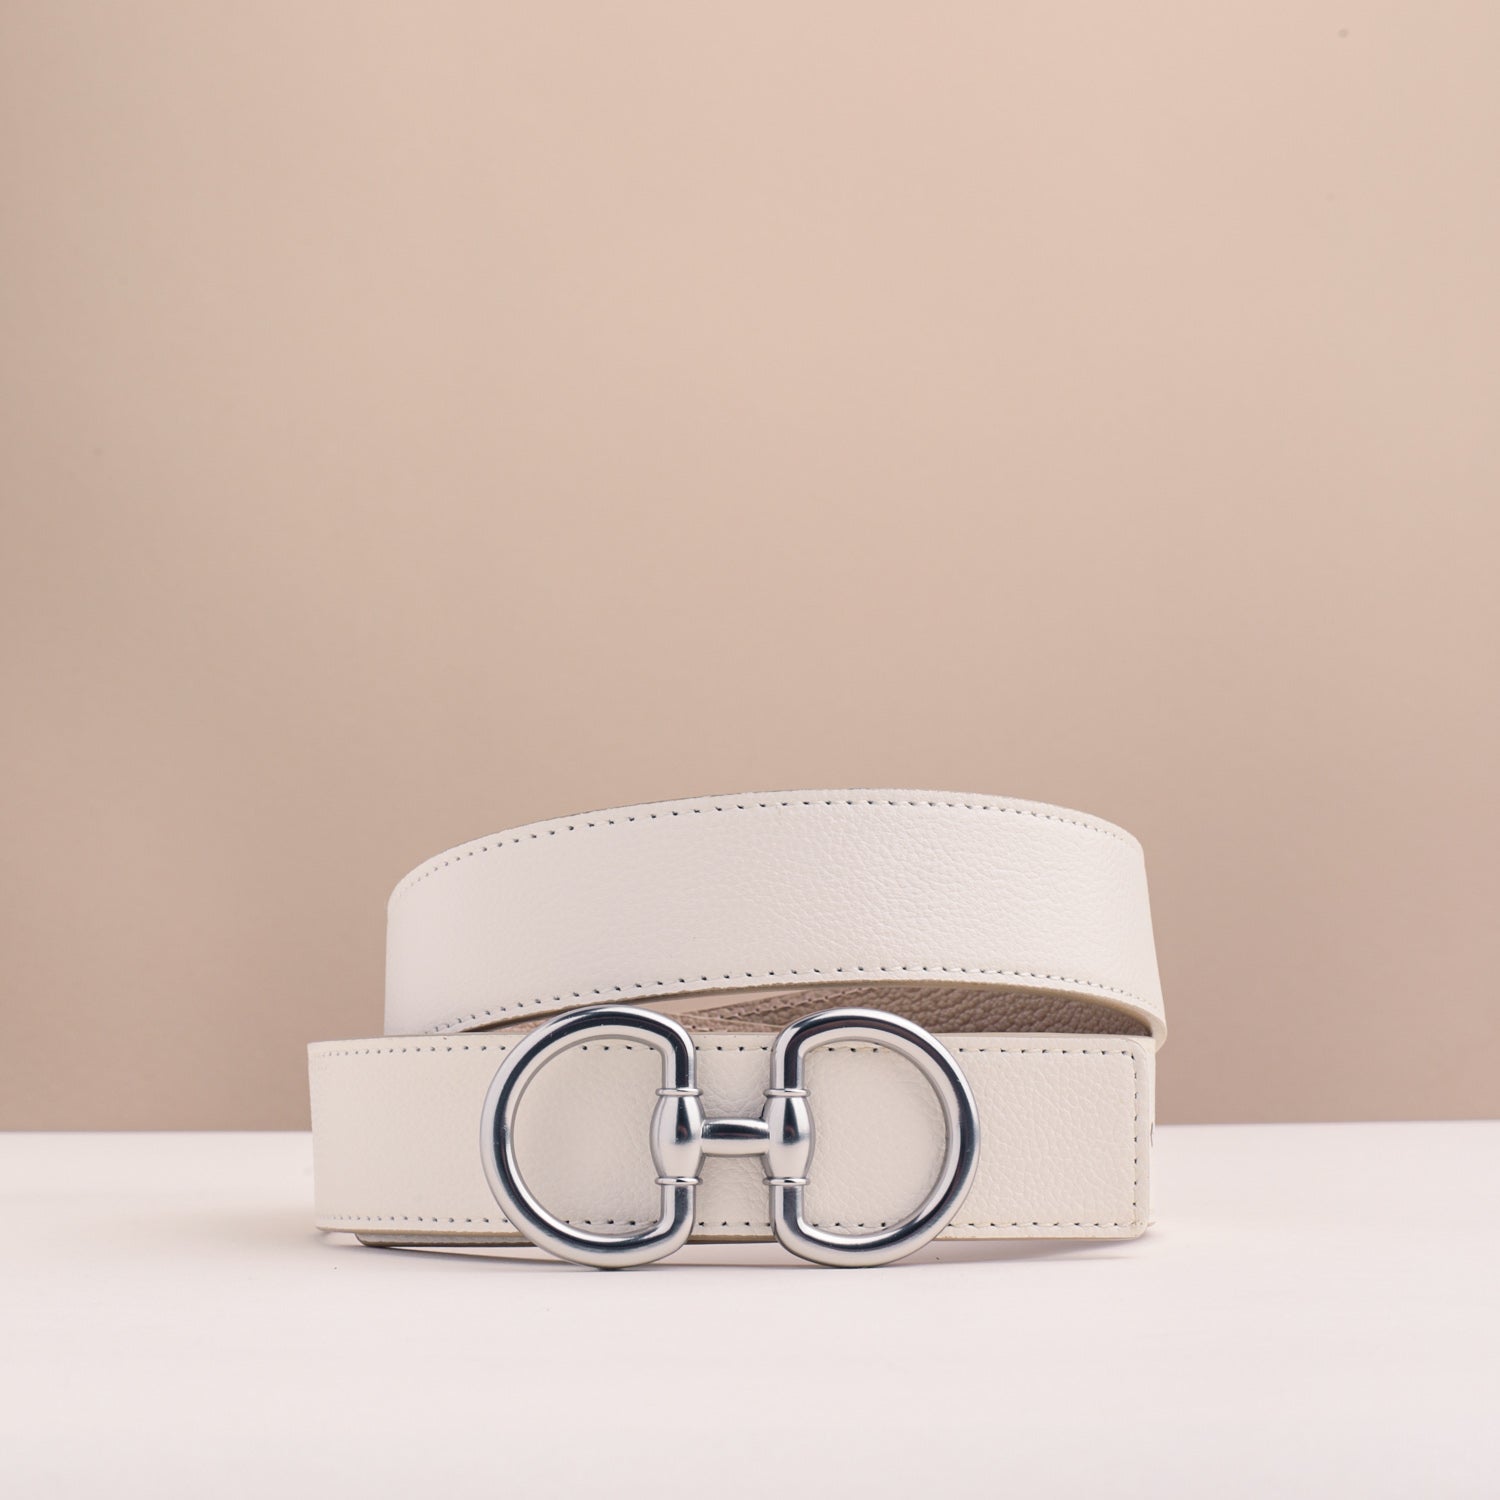 Designer Belts, Elegant Skinny & Broad Belts for Woman